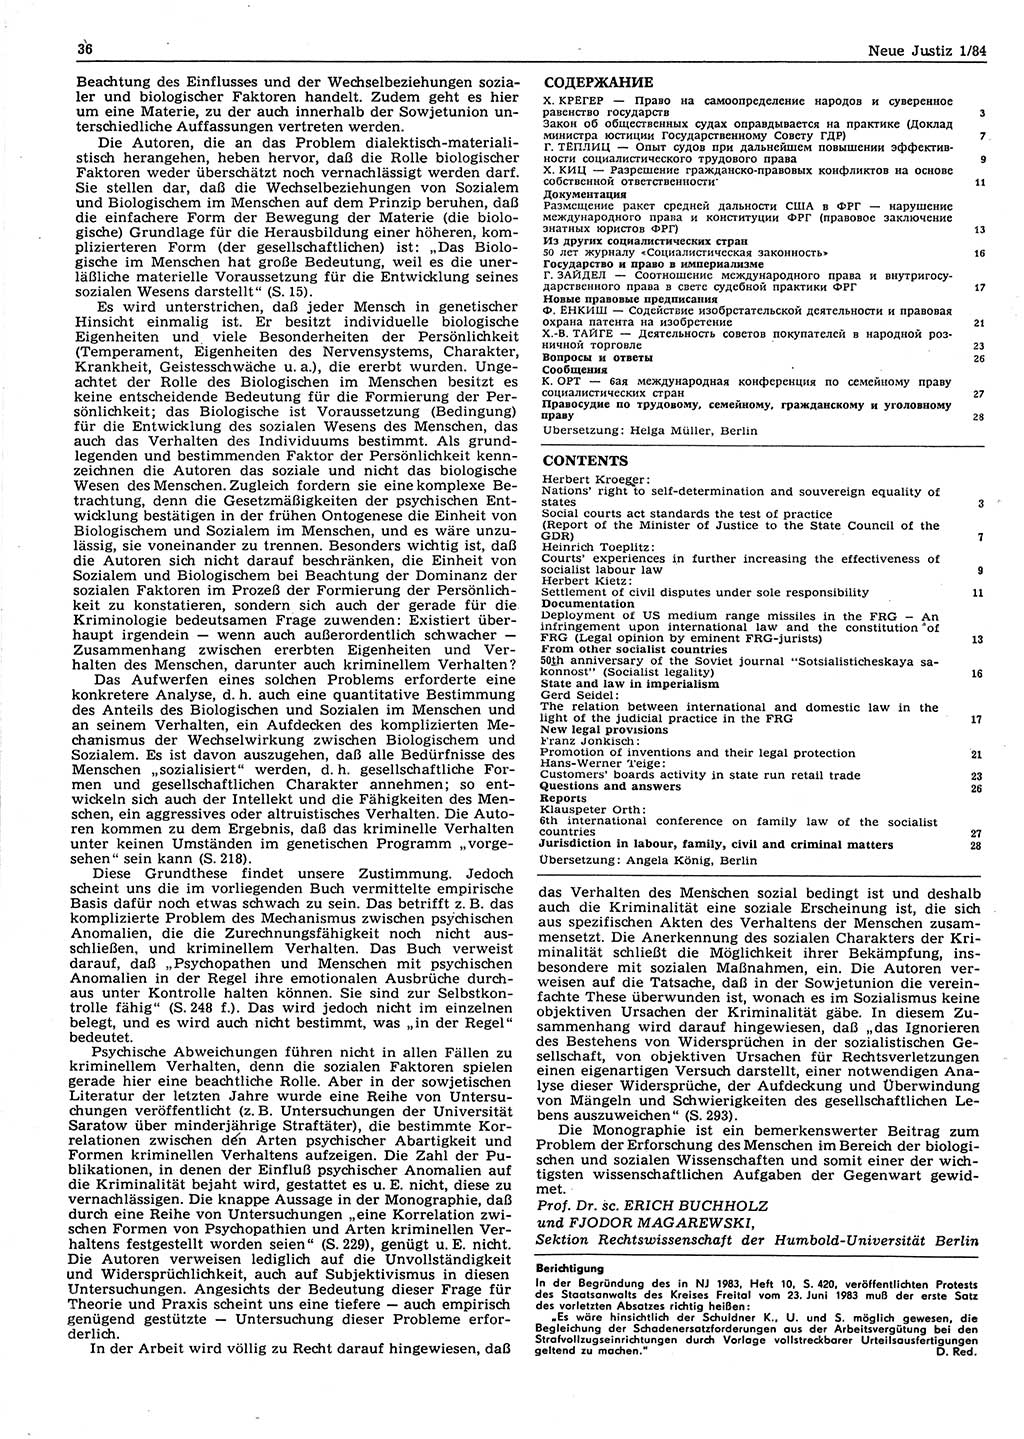 Neue Justiz (NJ), Zeitschrift für sozialistisches Recht und Gesetzlichkeit [Deutsche Demokratische Republik (DDR)], 38. Jahrgang 1984, Seite 36 (NJ DDR 1984, S. 36)